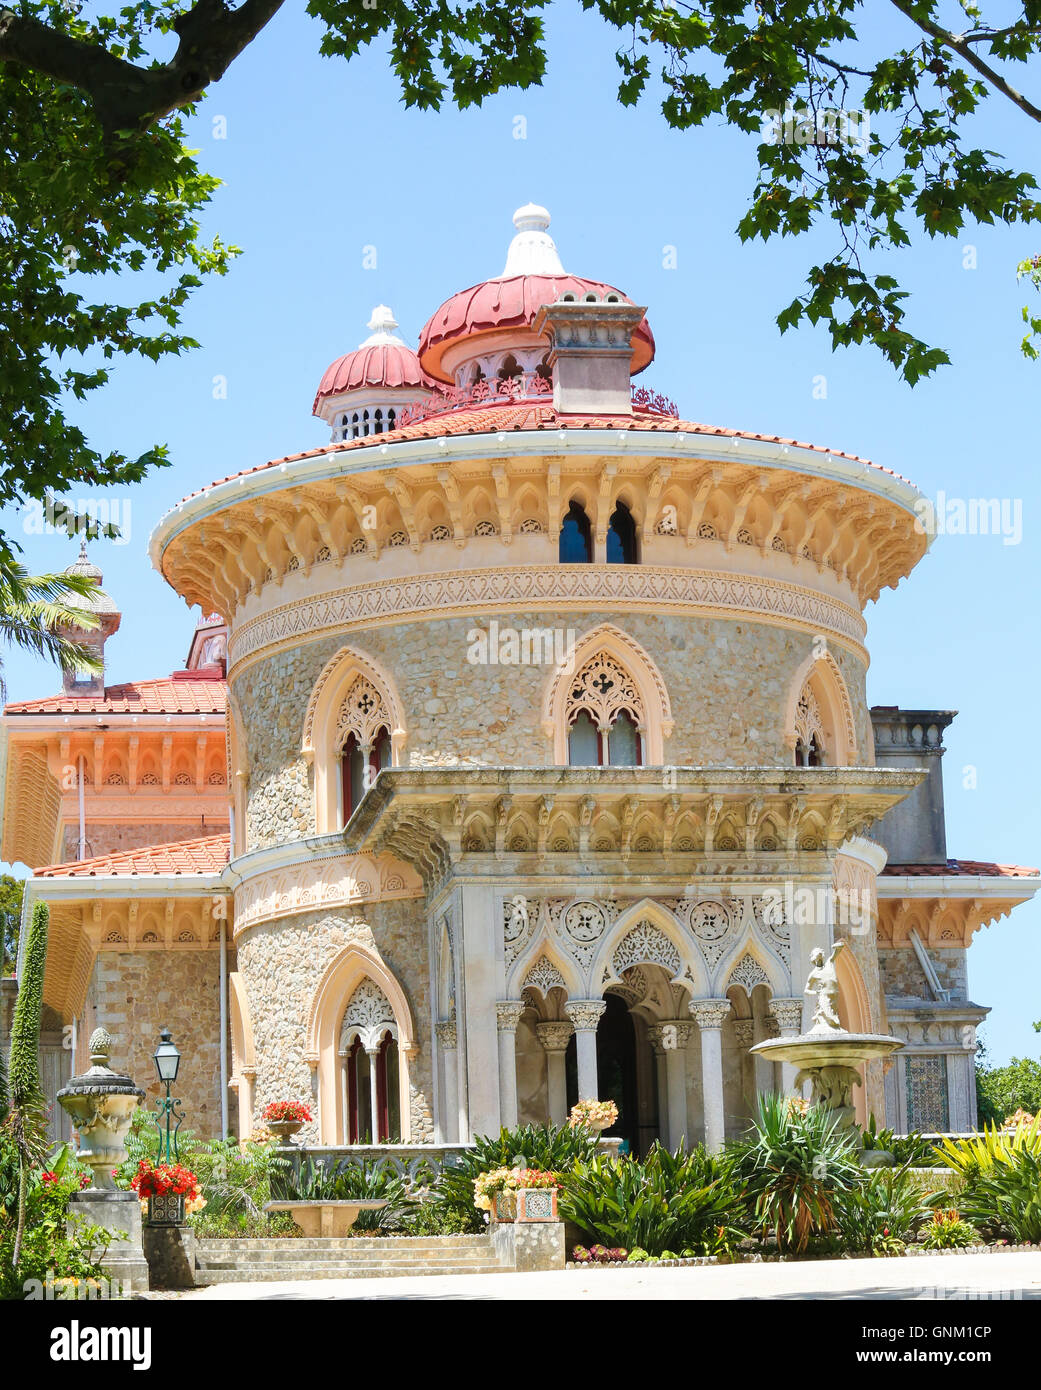 L'arabesque Palais Monseratte sur une colline près de la ville de Sintra, Lisbonne, Portugal Banque D'Images